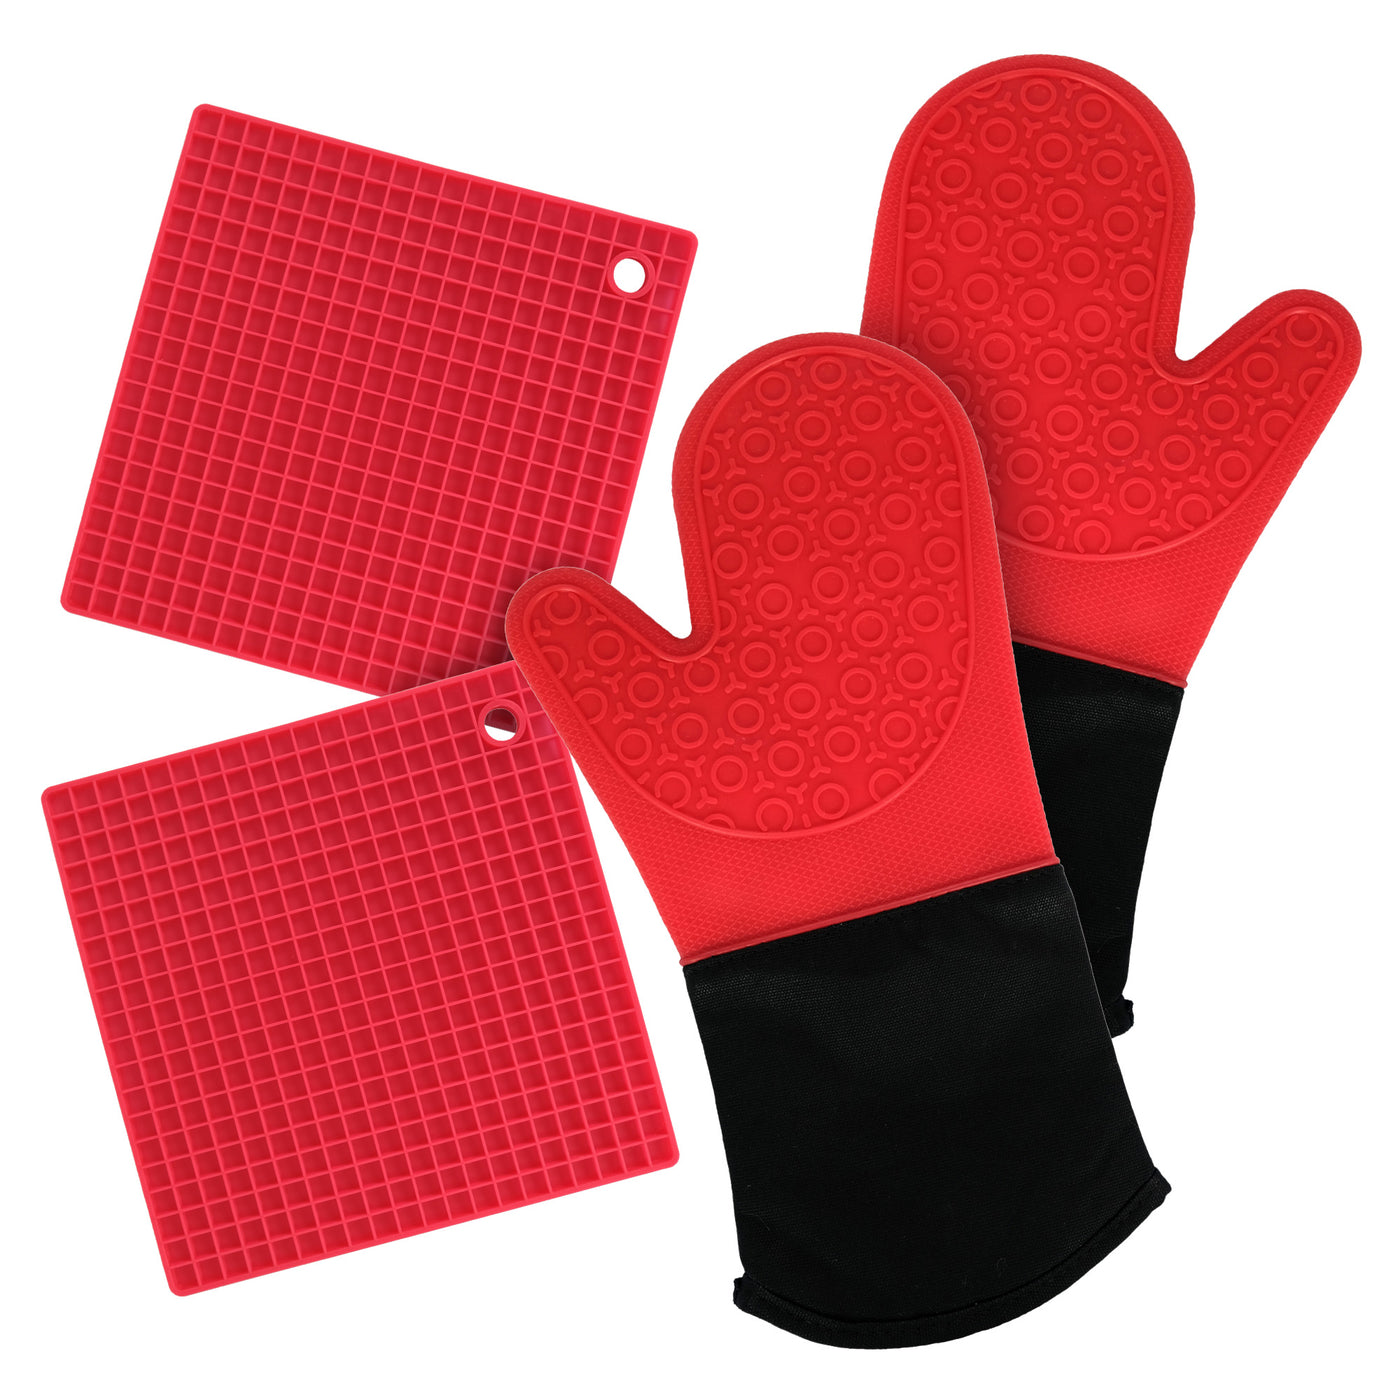 Mitaines de four et maniques en silicone (ensemble de 4 pièces), comptoir de cuisine – Maniques avancées résistantes à la chaleur, gant de four à poignée texturée antidérapante – Rouge